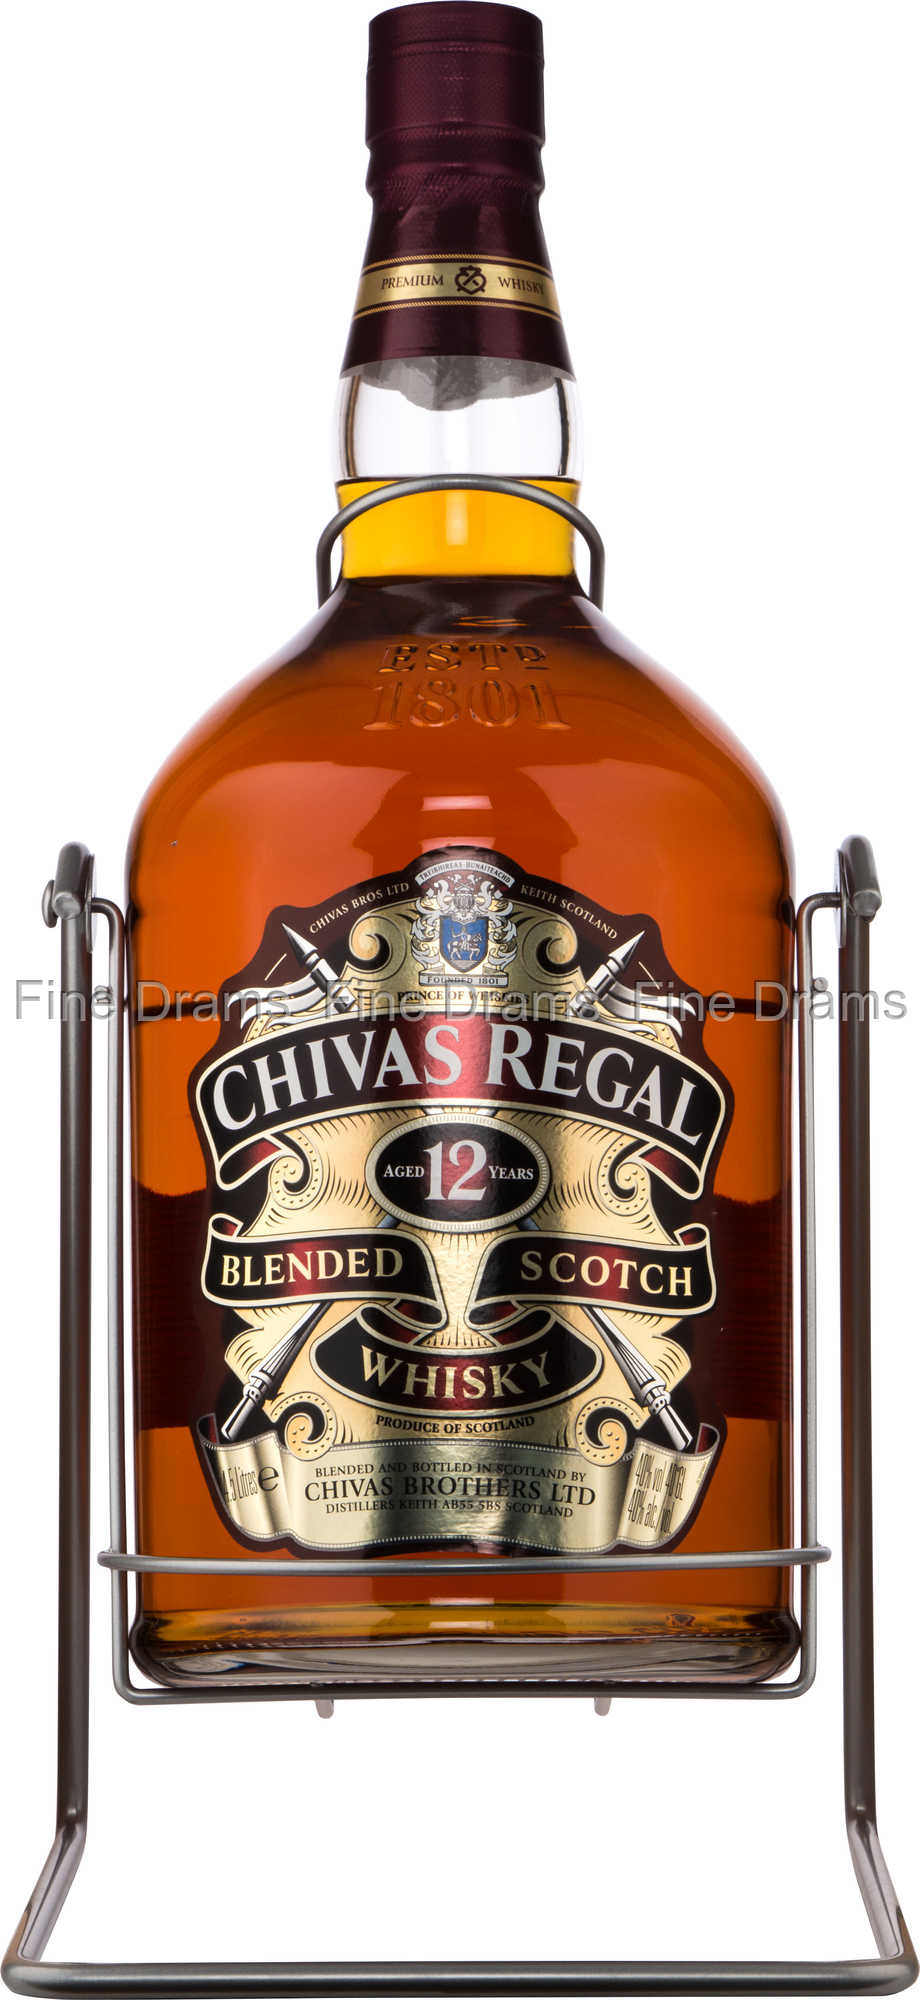 Chivas Regal 12 Year Old Whisky - 4.5 Liter